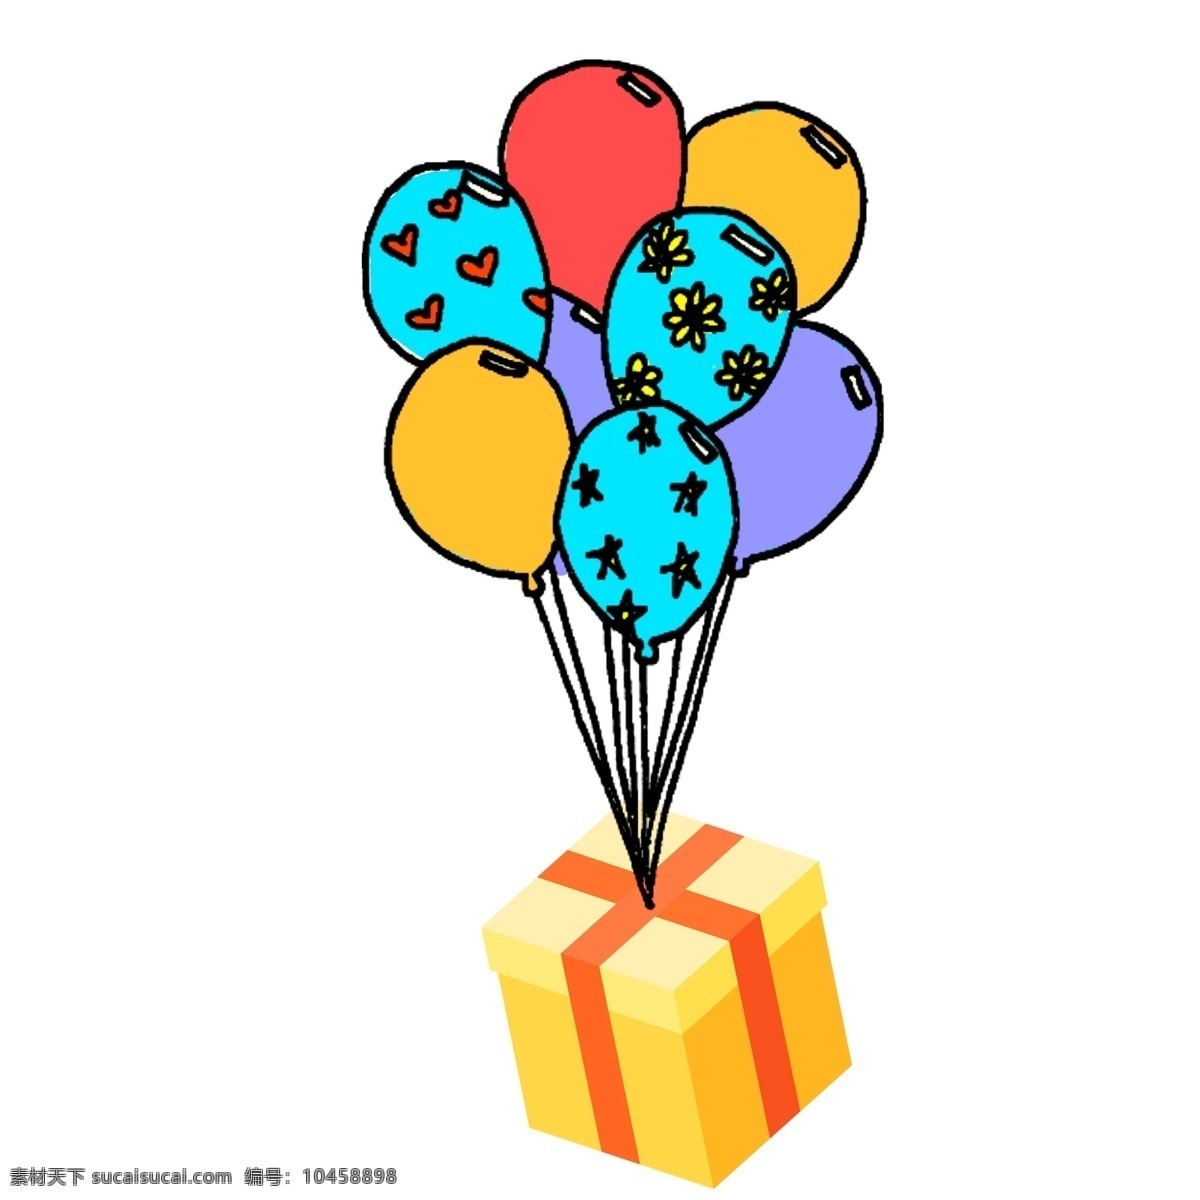 彩绘 波普 风 气球 礼盒 插画 波普风 节日元素 礼物 愚人节